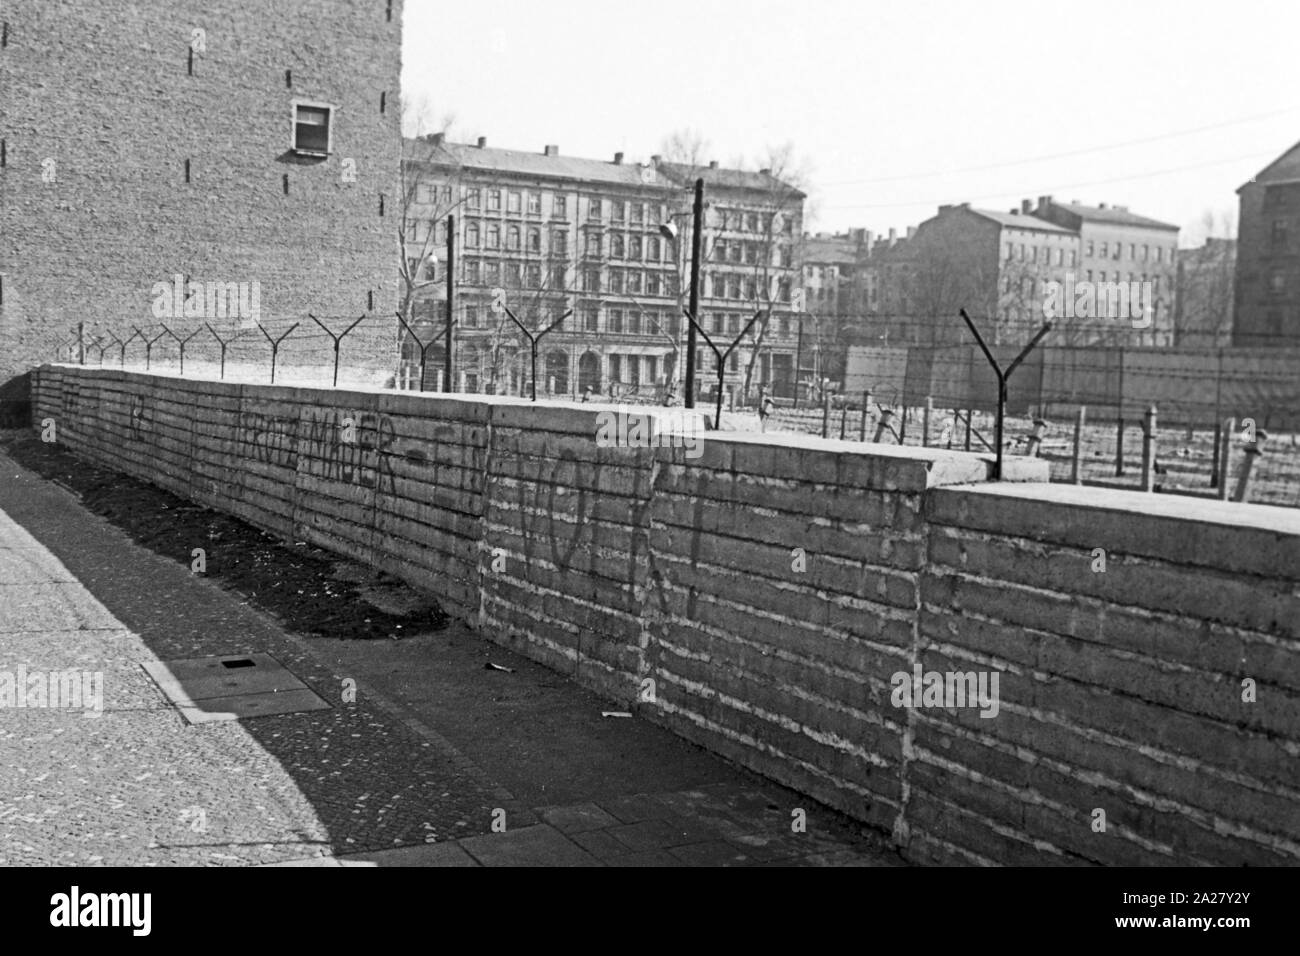 Die mitten durch die Stadt verlaufende Mauer in Berlin, Deutschland 1963. The wall as a border amidst the city of Berlin, Germany 1963. Stock Photo